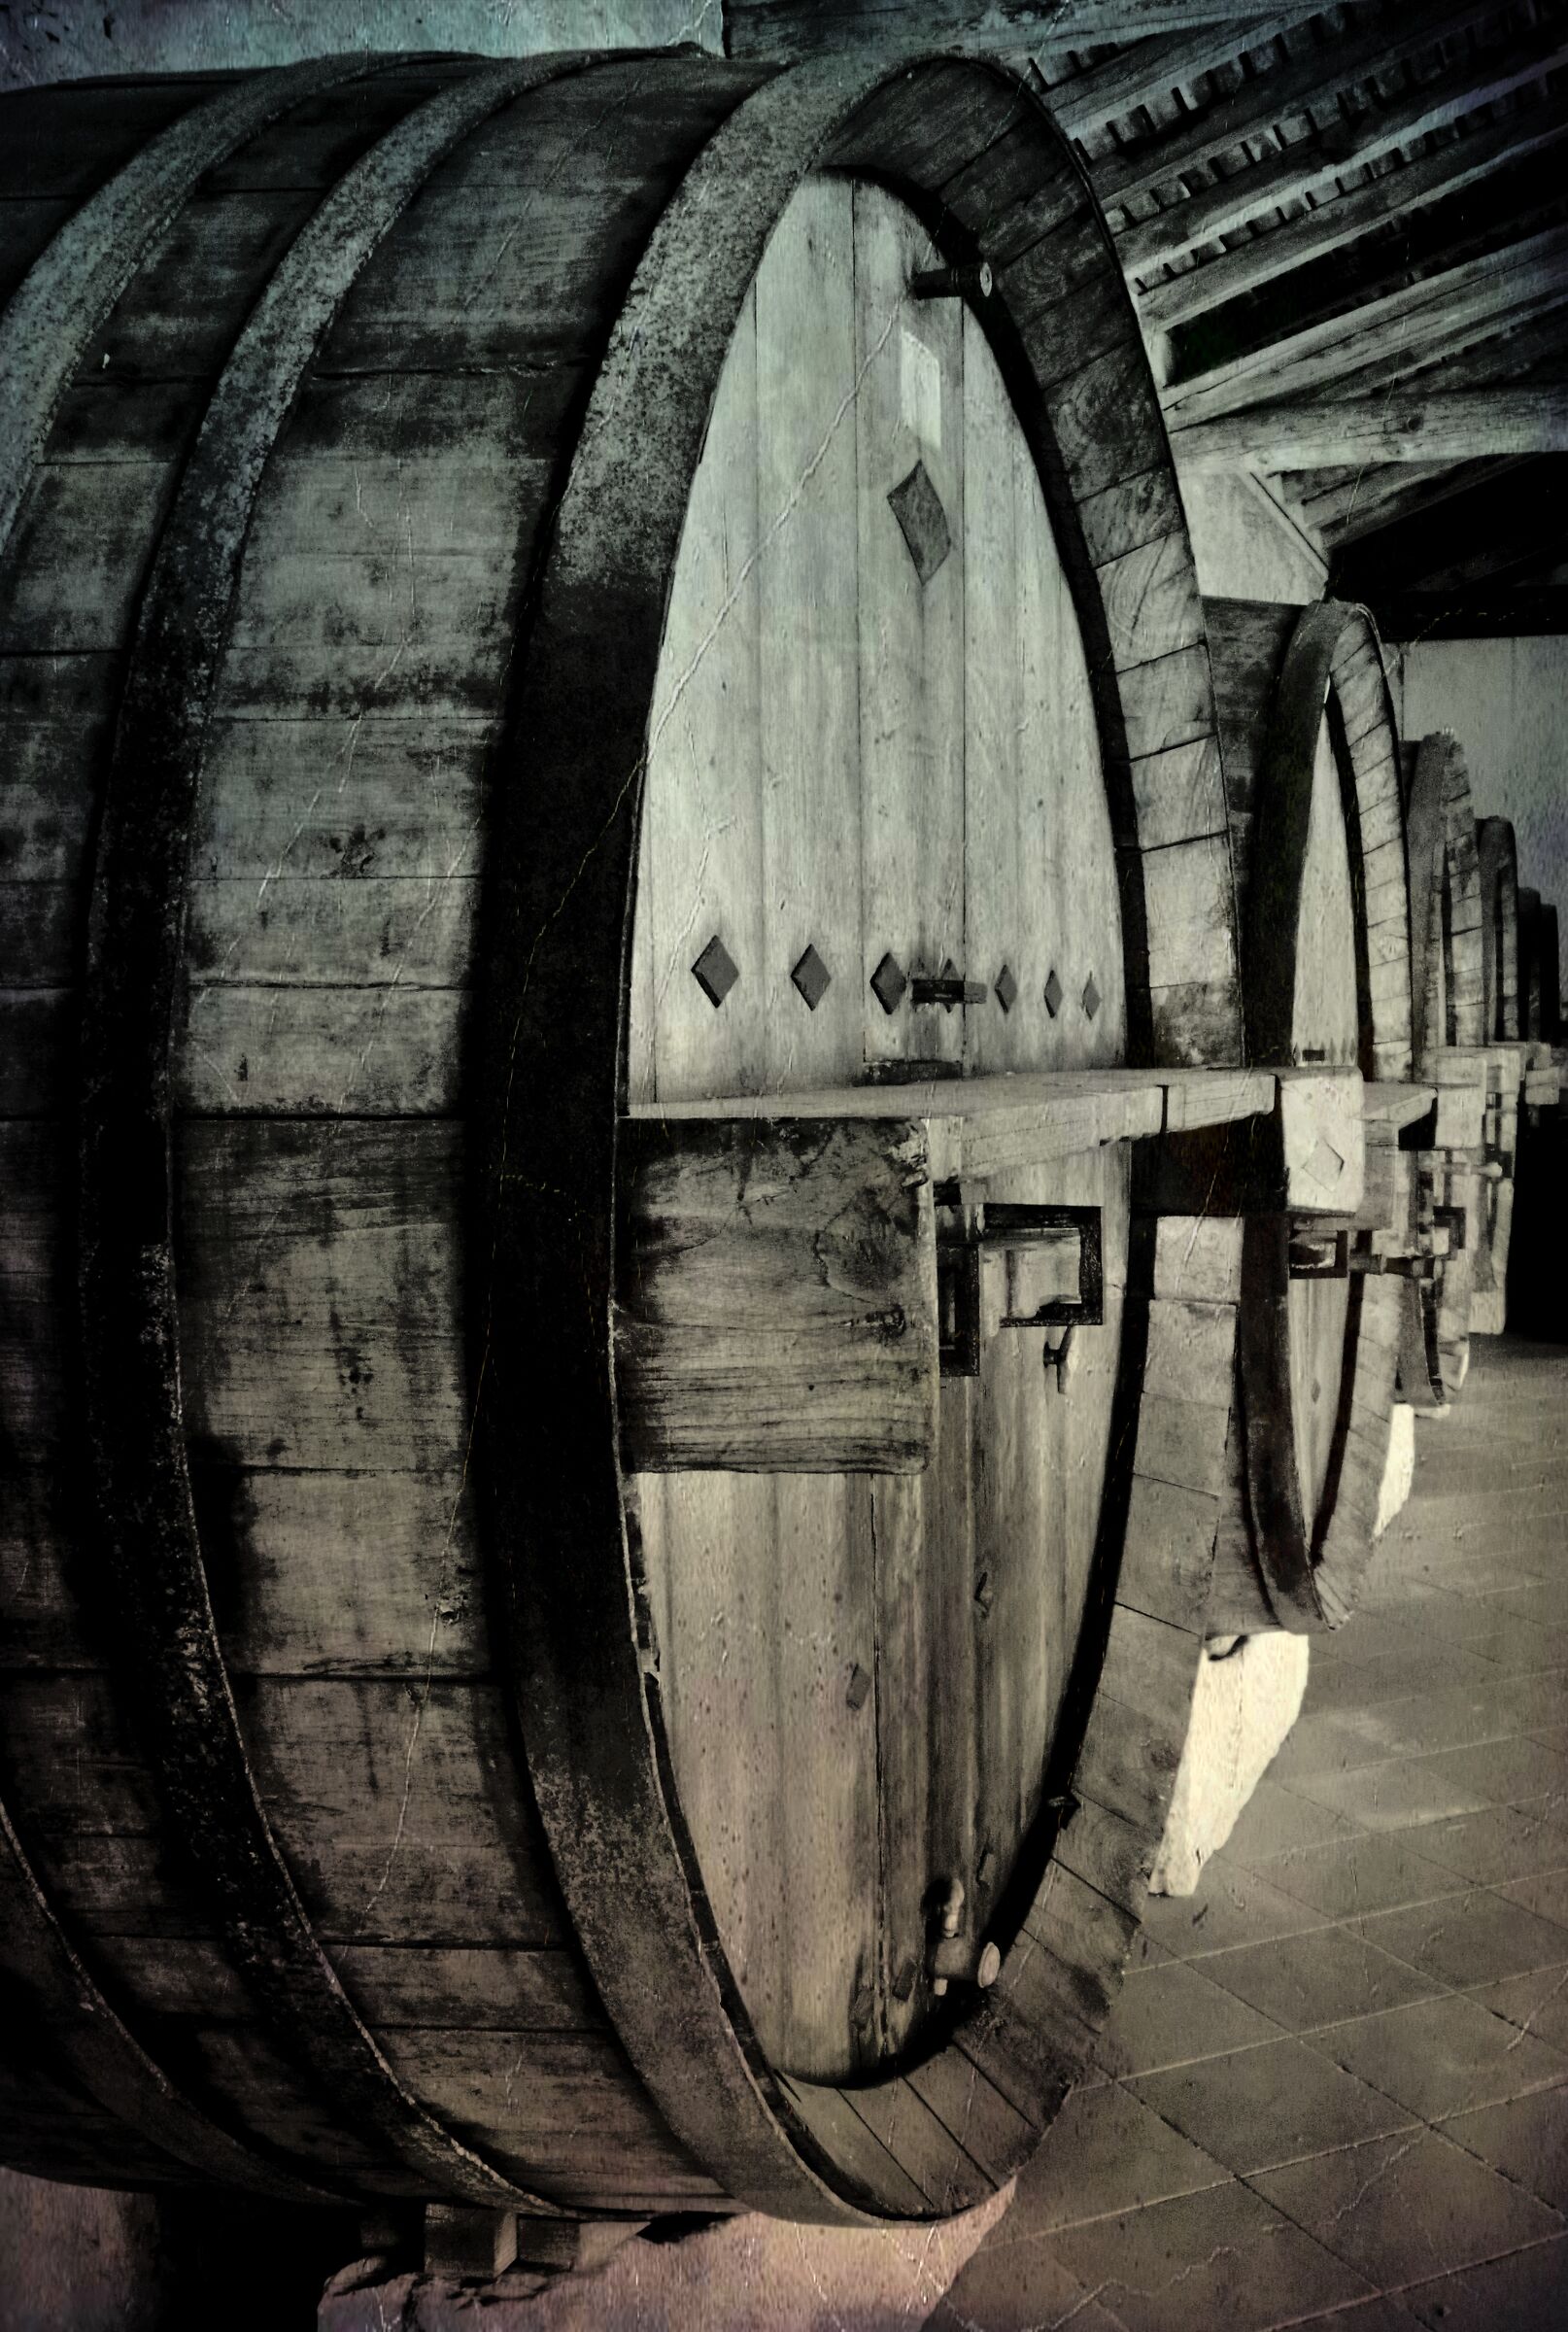 Ancient barrels...